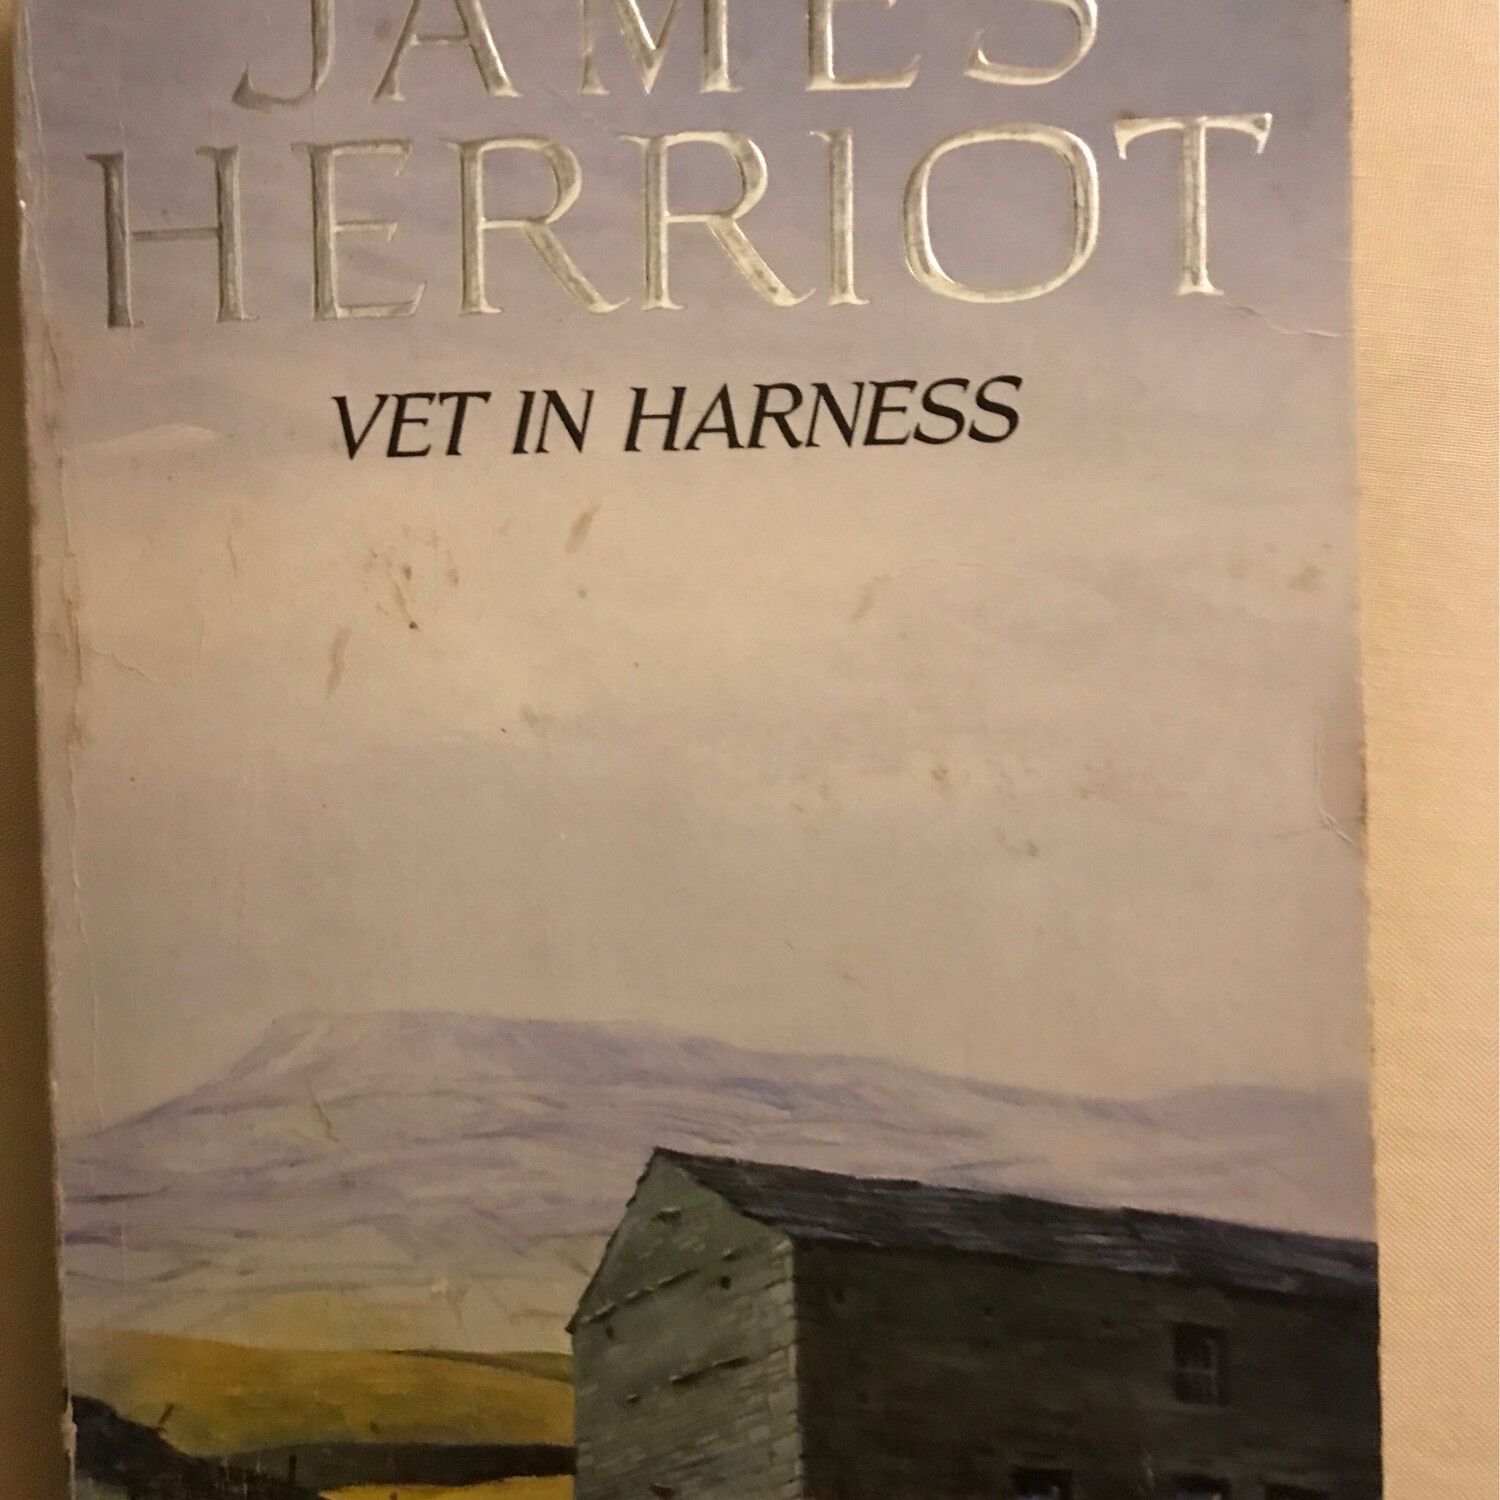 Vet In Harness, James Herriot